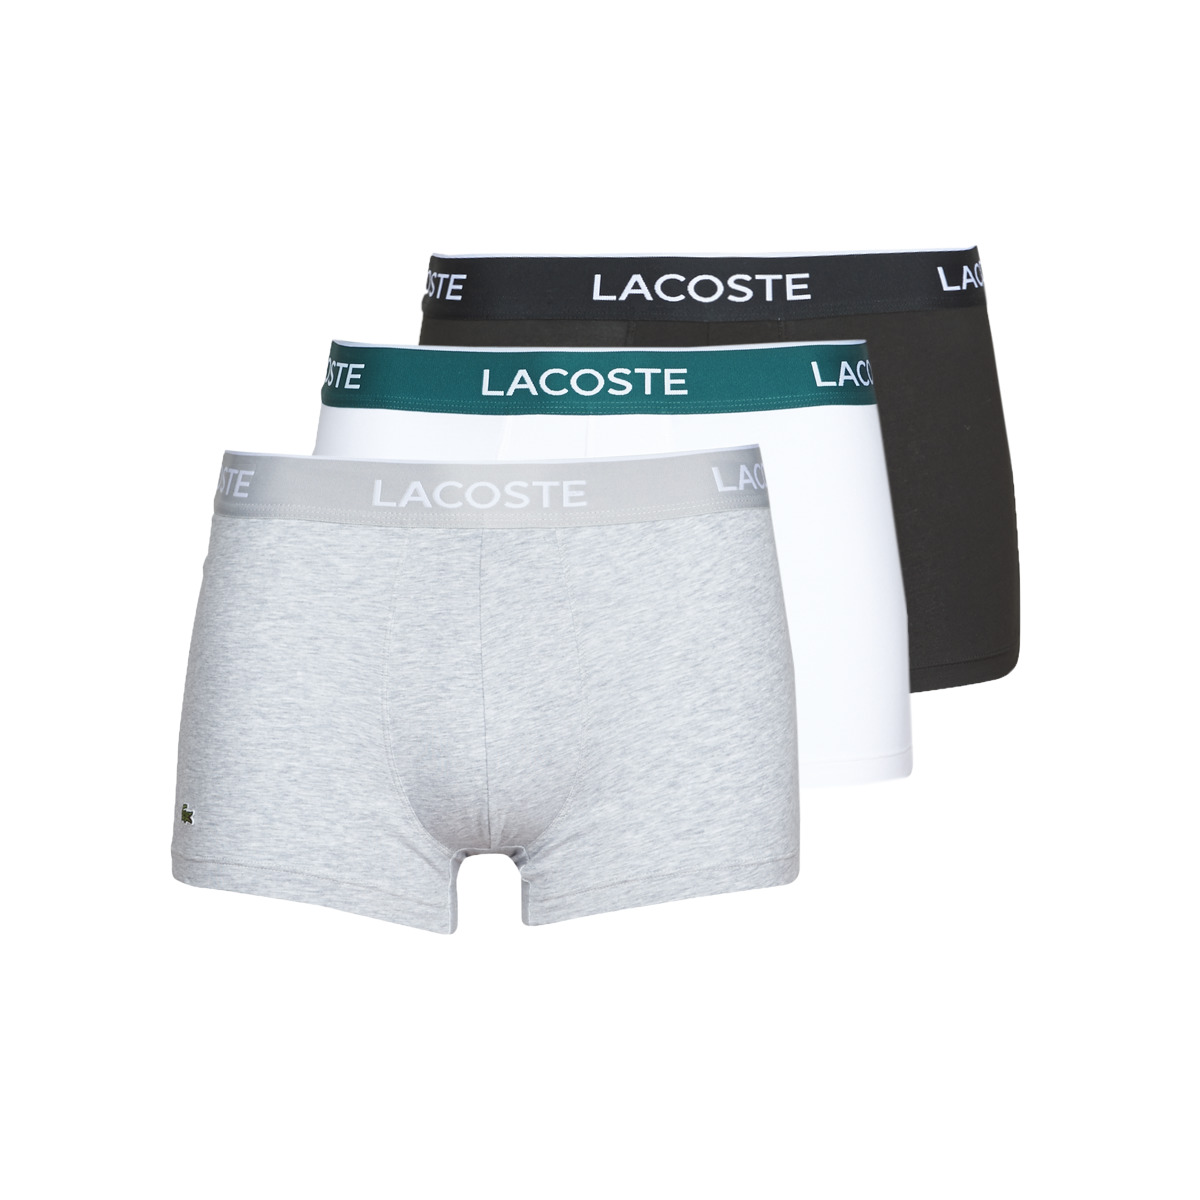 Visiter la boutique LacosteLacoste sous-vêtement Homme 